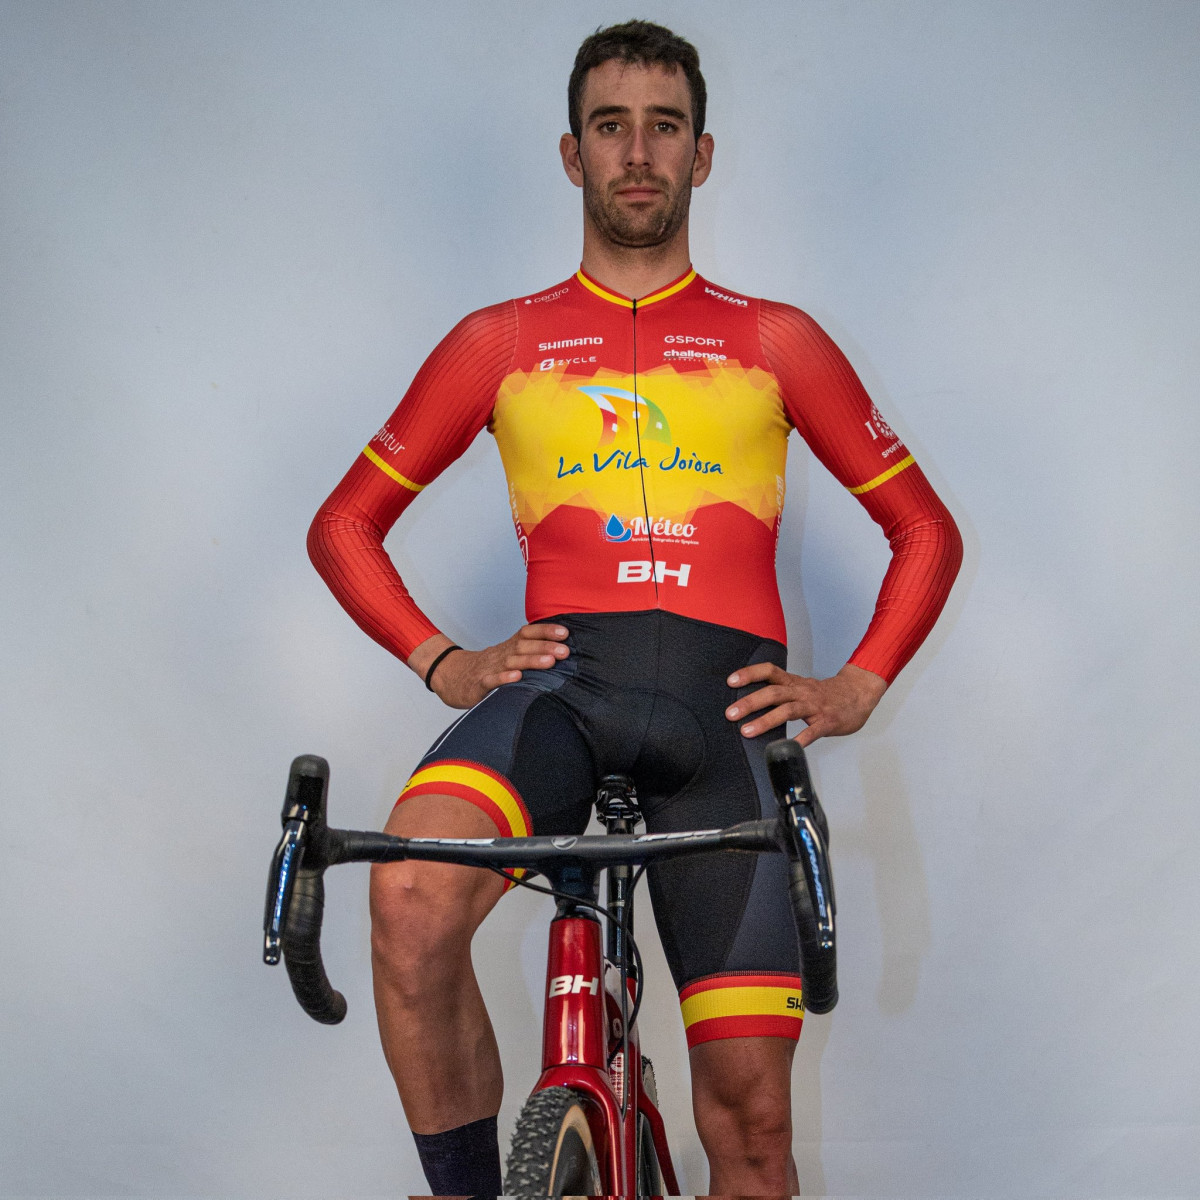 girodociclismo.com.br campeao espanhol monta equipe com nome de sua cidade apos saida da burgos bh felipe orts